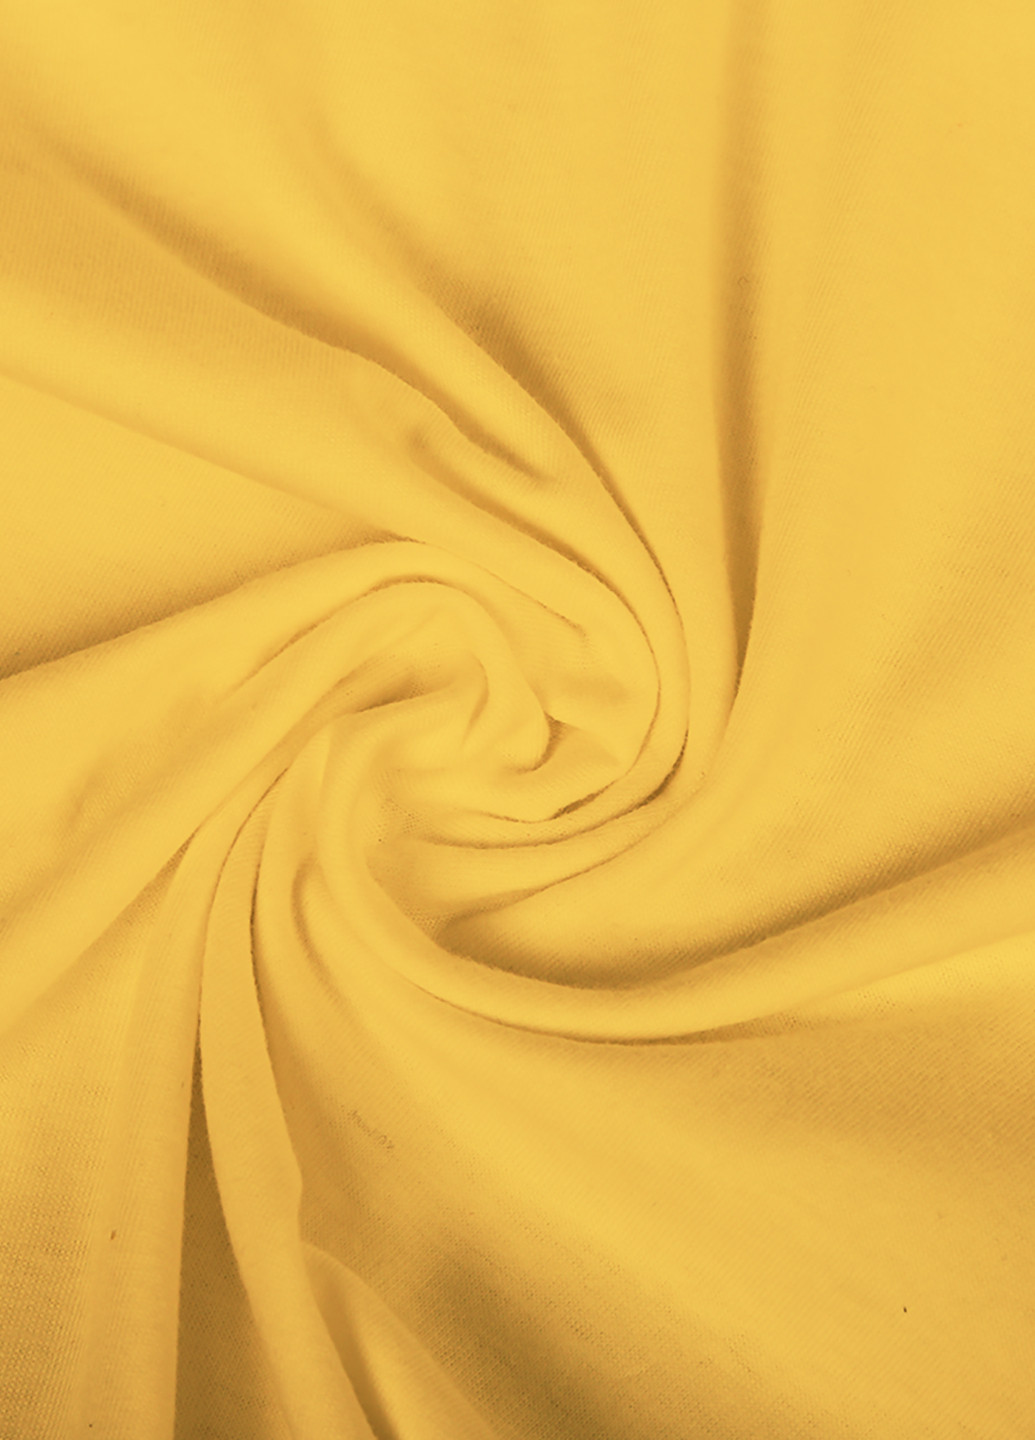 Желтая демисезонная футболка детская роблокс (roblox)(9224-1707) MobiPrint